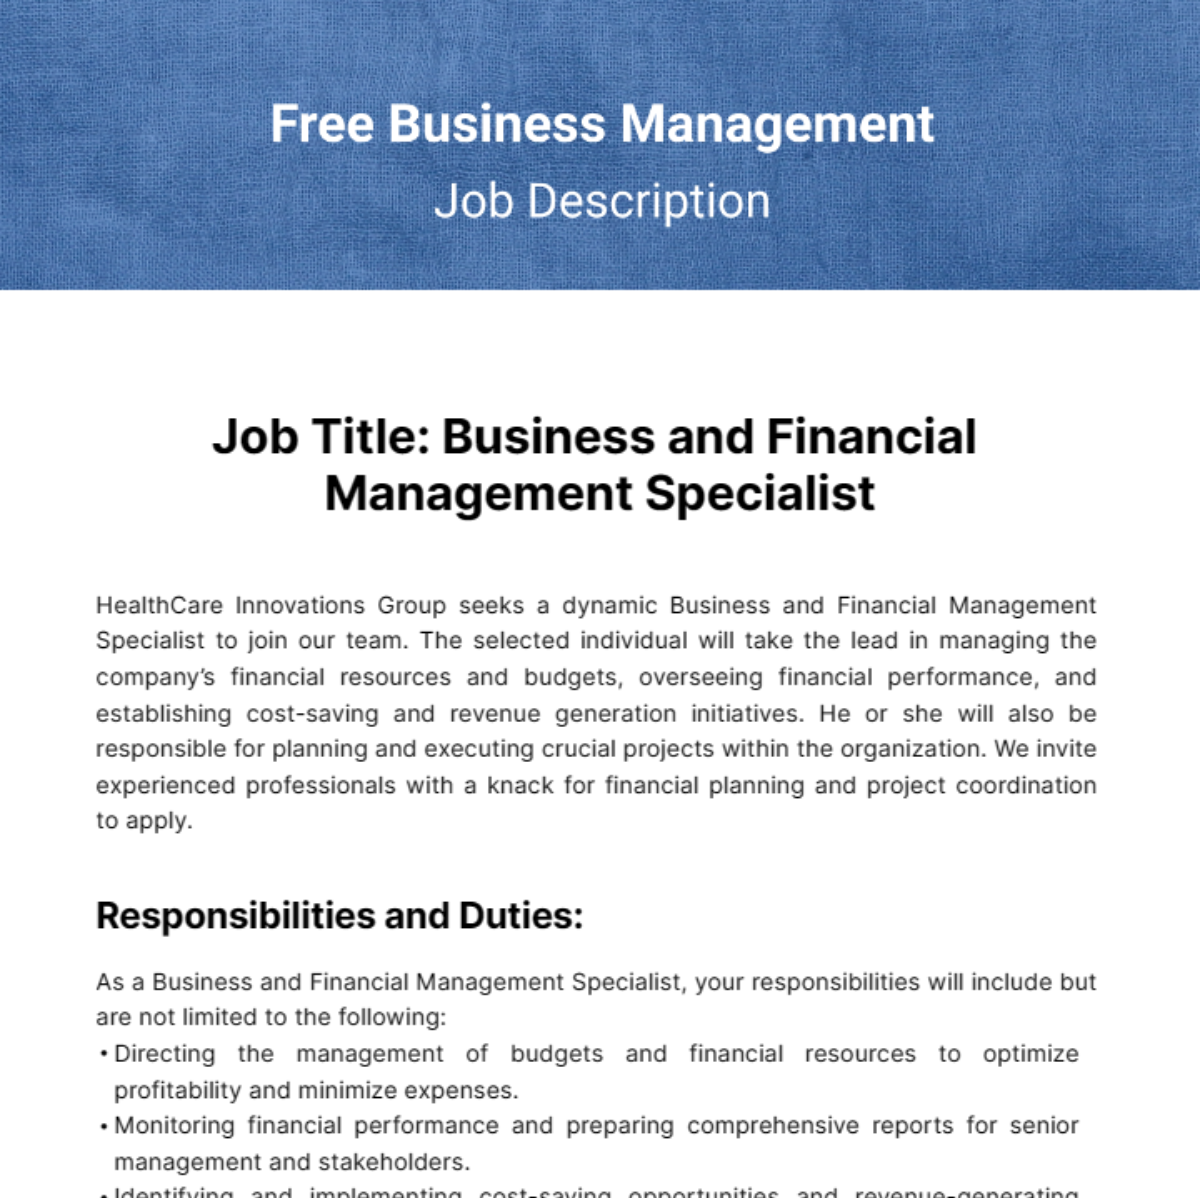 Free Business Management Job Description Template